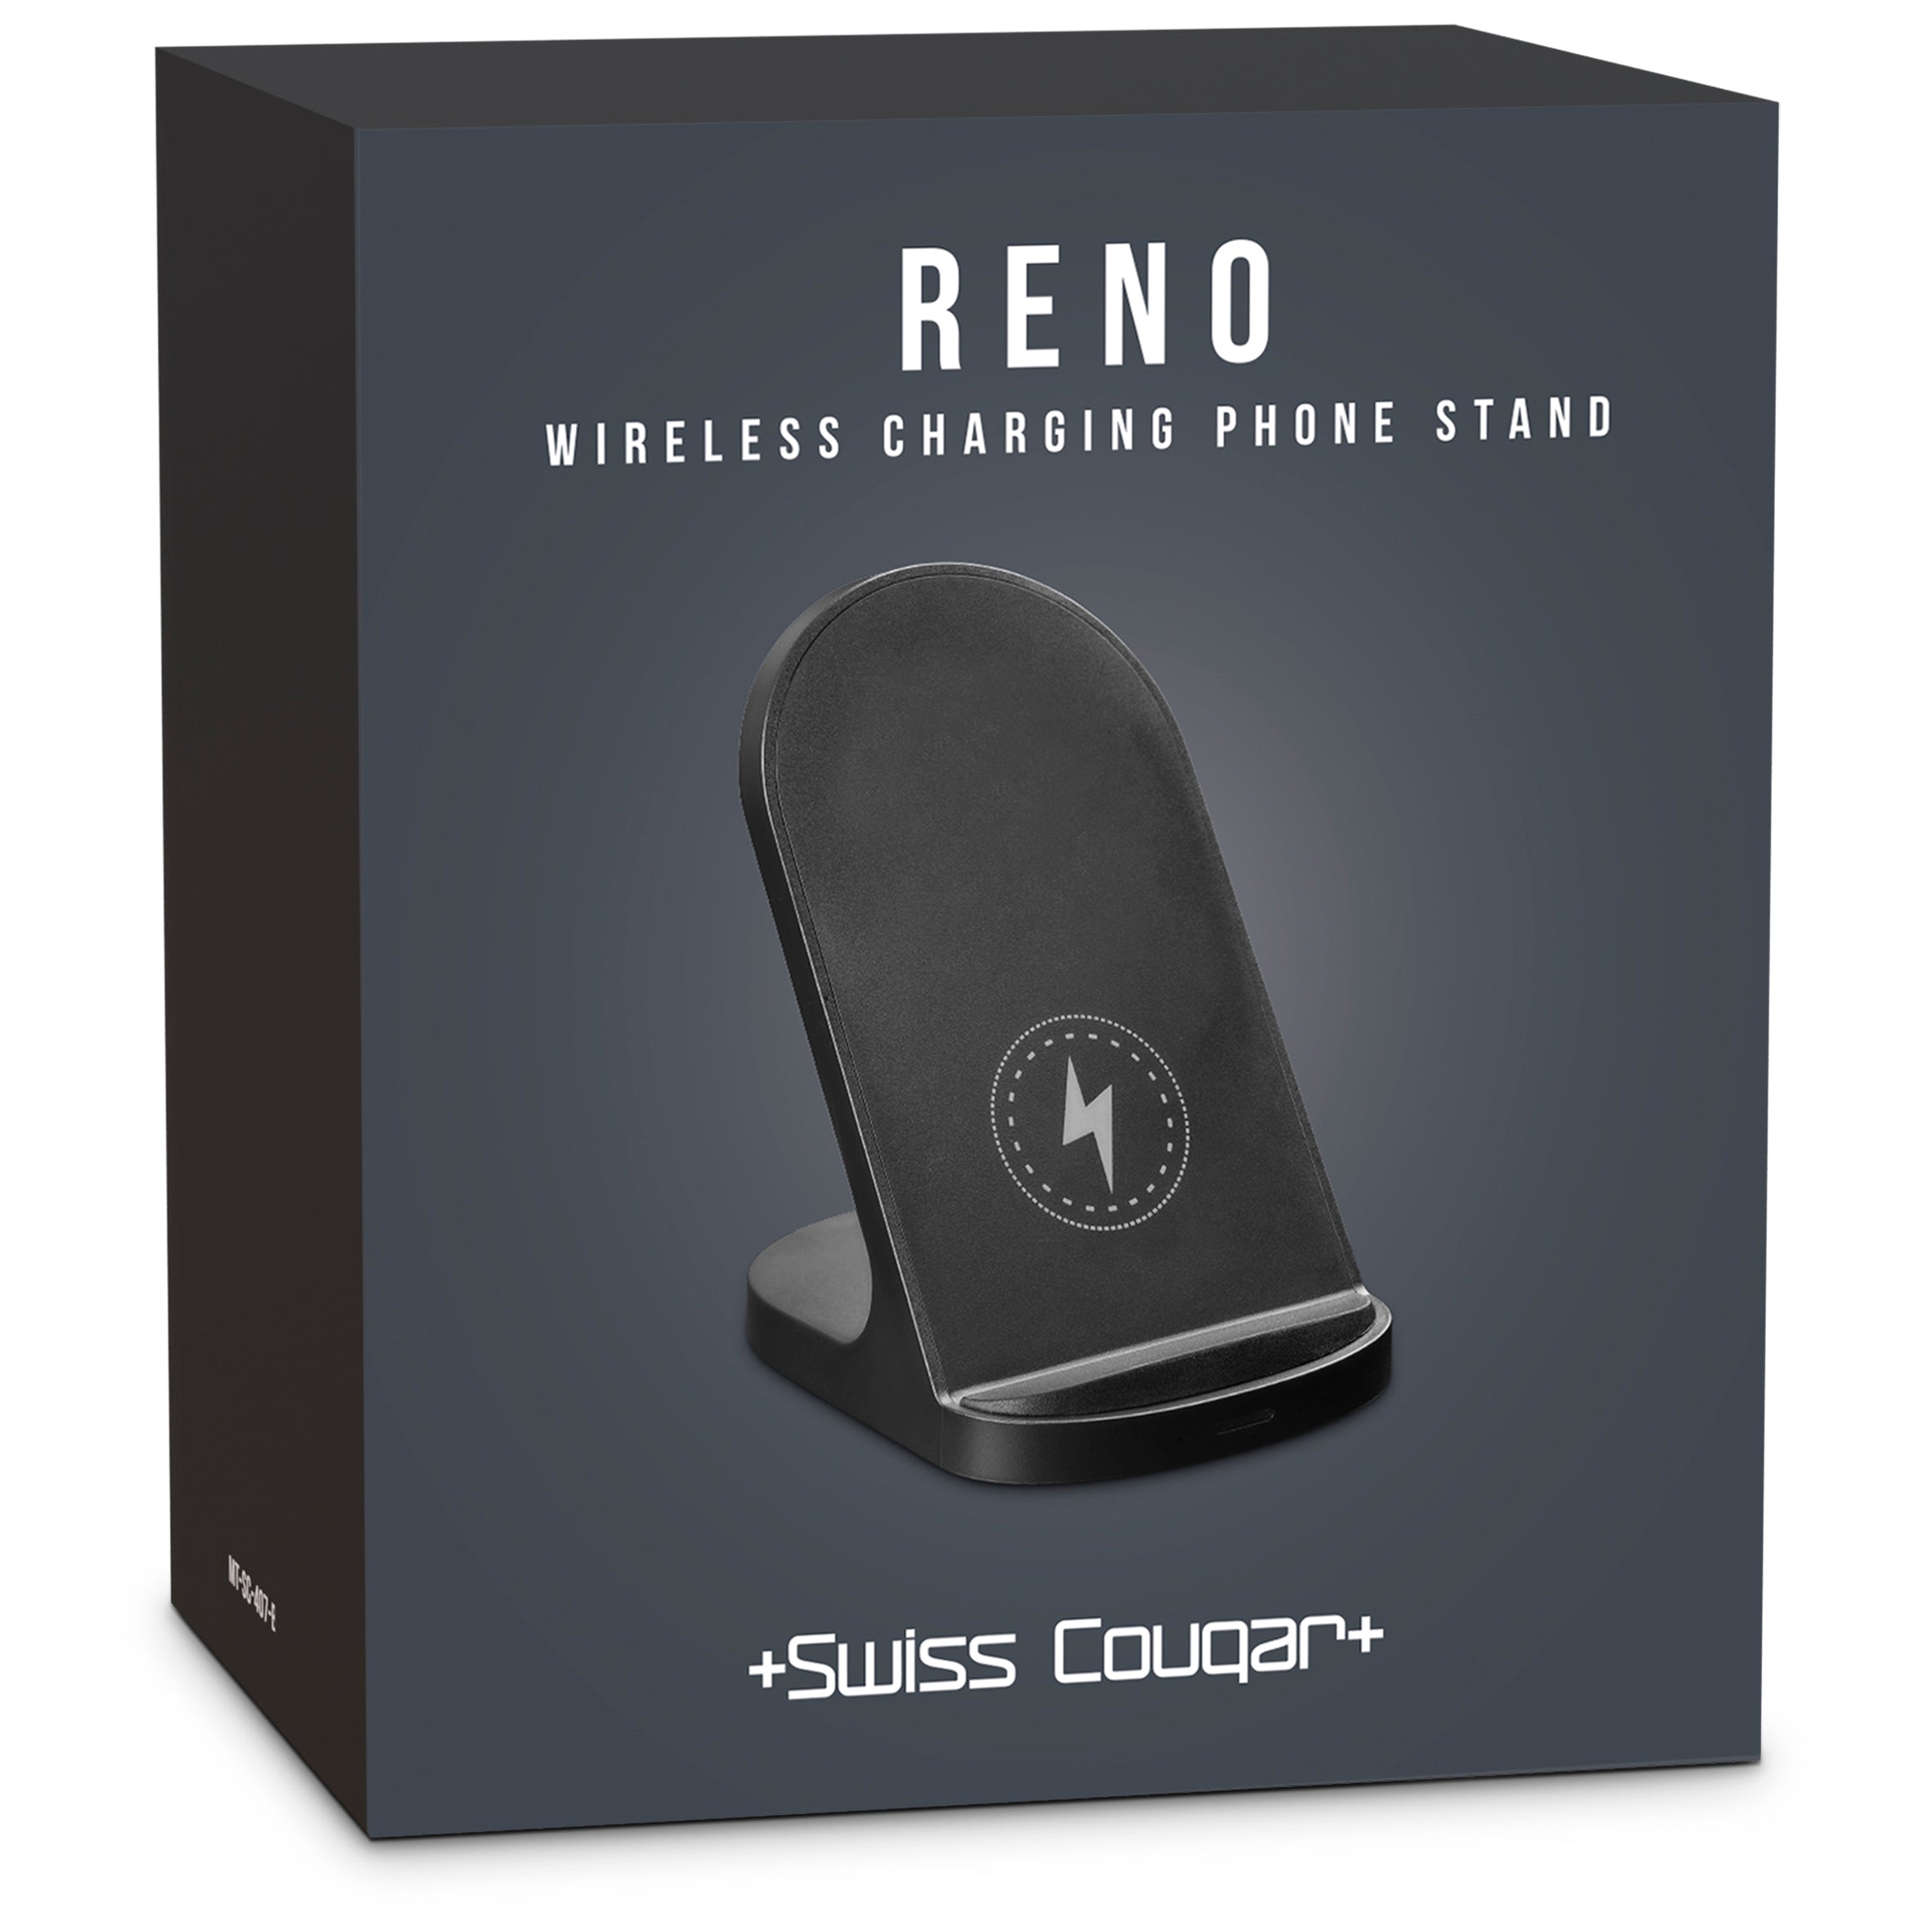 Reno Wireless Charging Phone Stand